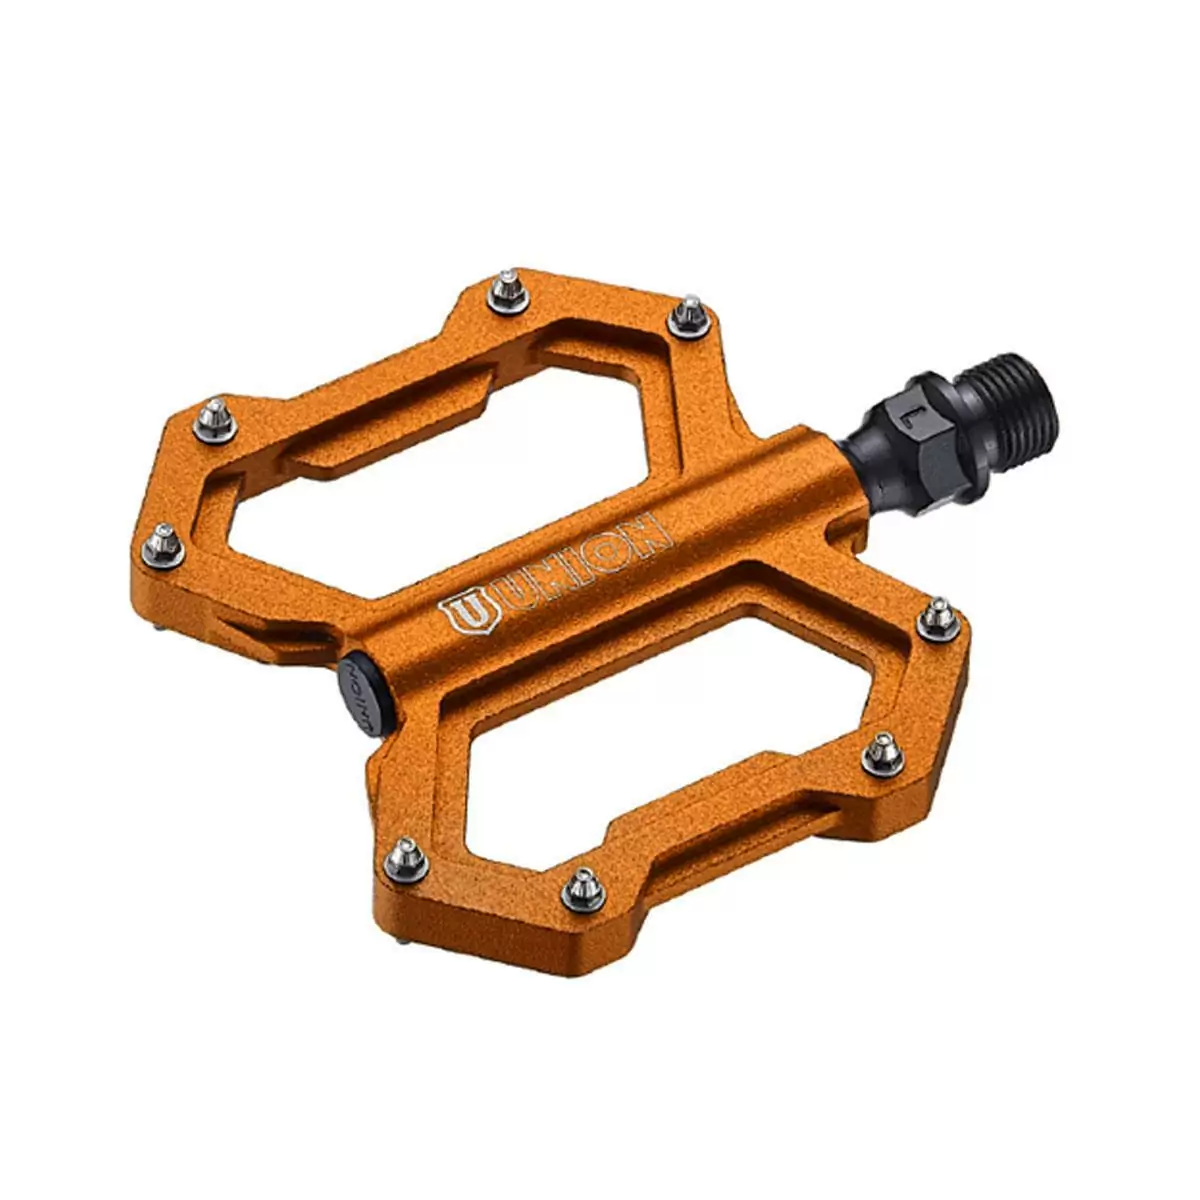 pair freeride pedals sp1210 cnc aluminium orange - image